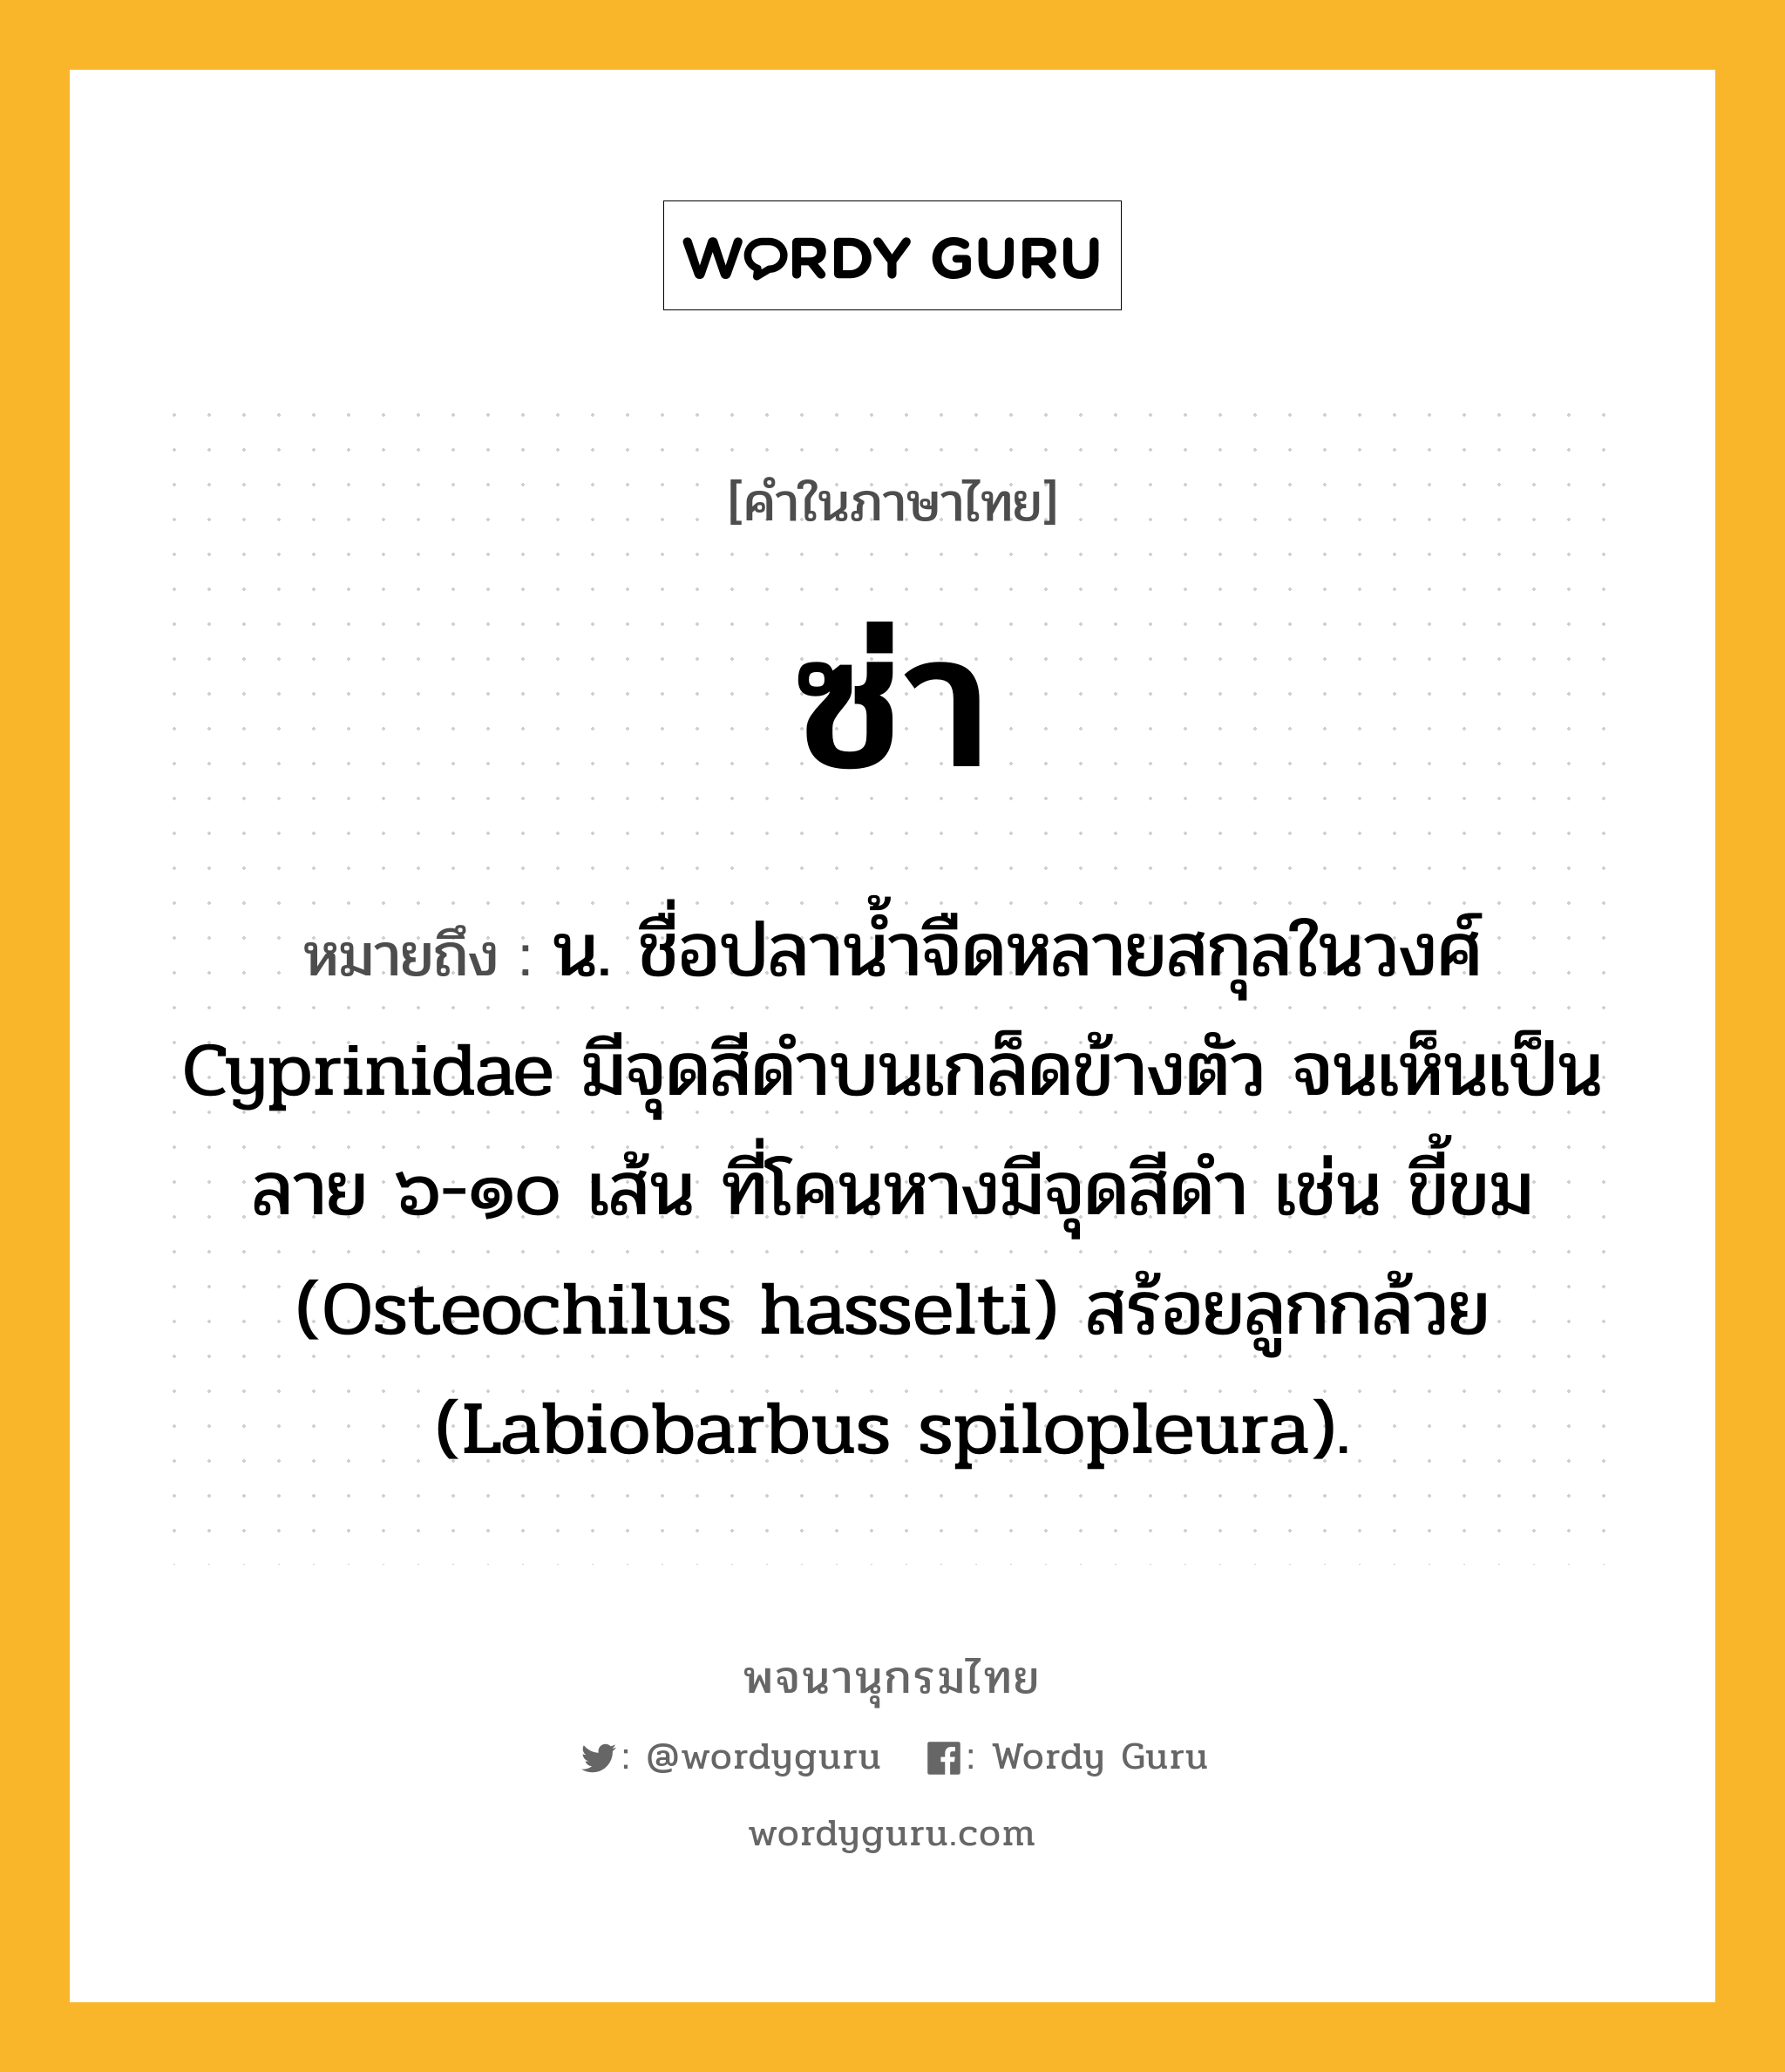 ซ่า ความหมาย หมายถึงอะไร?, คำในภาษาไทย ซ่า หมายถึง น. ชื่อปลานํ้าจืดหลายสกุลในวงศ์ Cyprinidae มีจุดสีดําบนเกล็ดข้างตัว จนเห็นเป็นลาย ๖-๑๐ เส้น ที่โคนหางมีจุดสีดํา เช่น ขี้ขม (Osteochilus hasselti) สร้อยลูกกล้วย (Labiobarbus spilopleura).